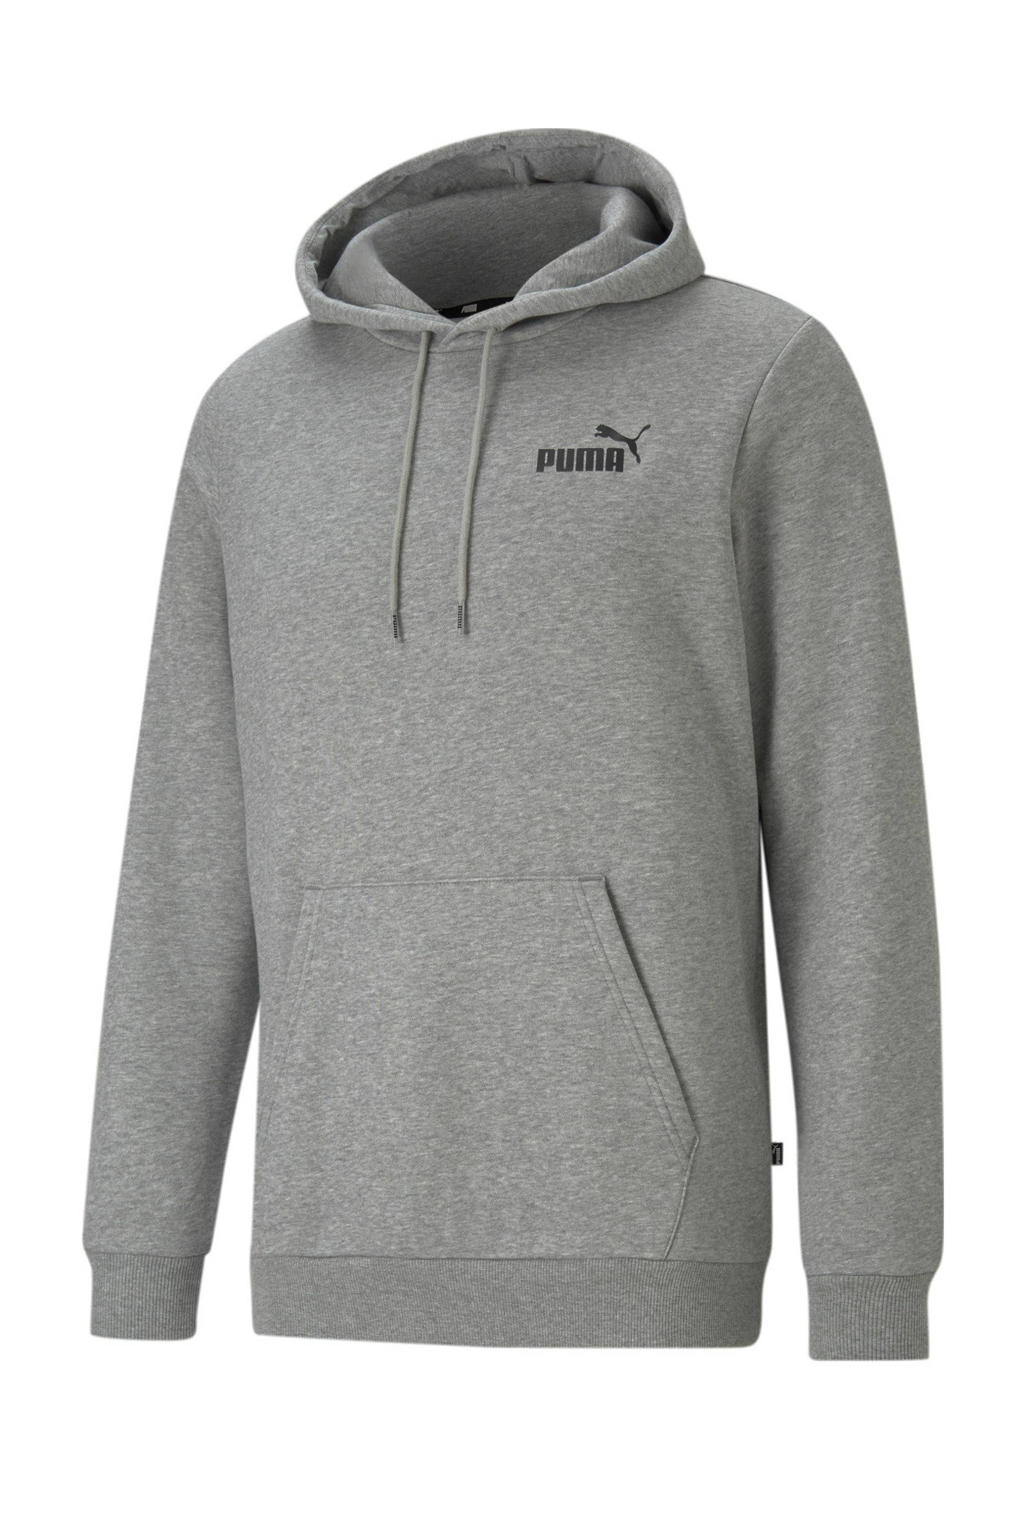 Grijs melange heren Puma hoodie melange van polyester met logo dessin, lange mouwen, capuchon en geribde boorden